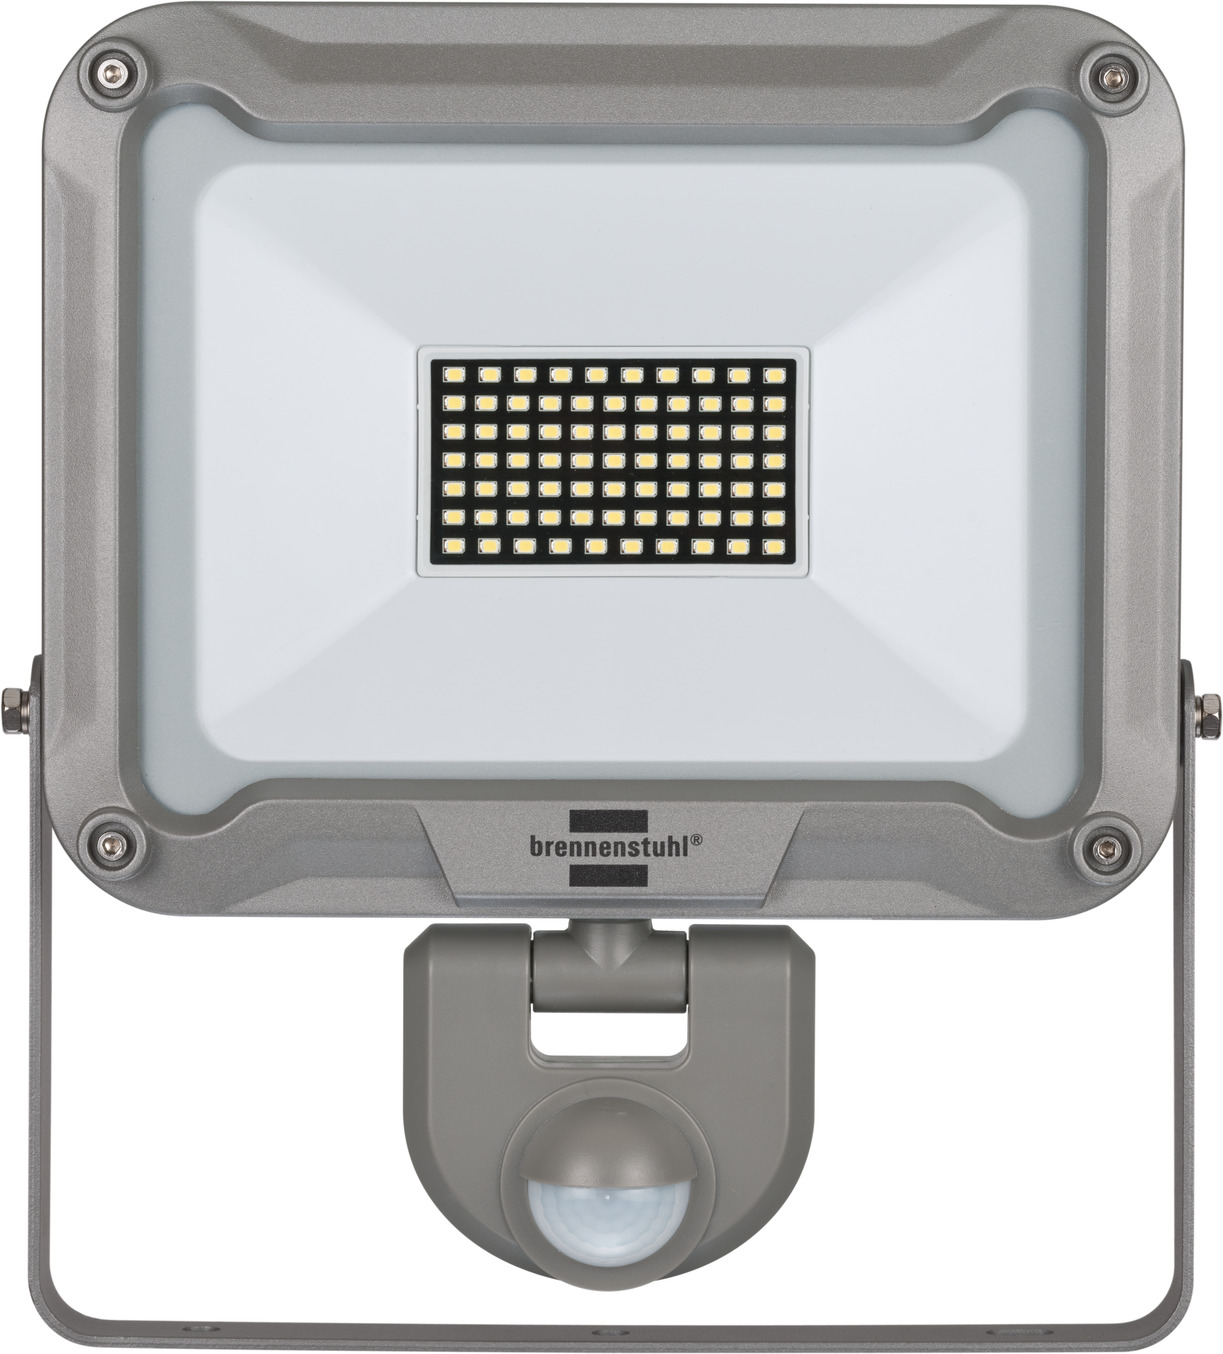 LED Strahler JARO P IP54 Infrarot-Bewegungsmelder 50W, mit | 4400lm, 5050 brennenstuhl®